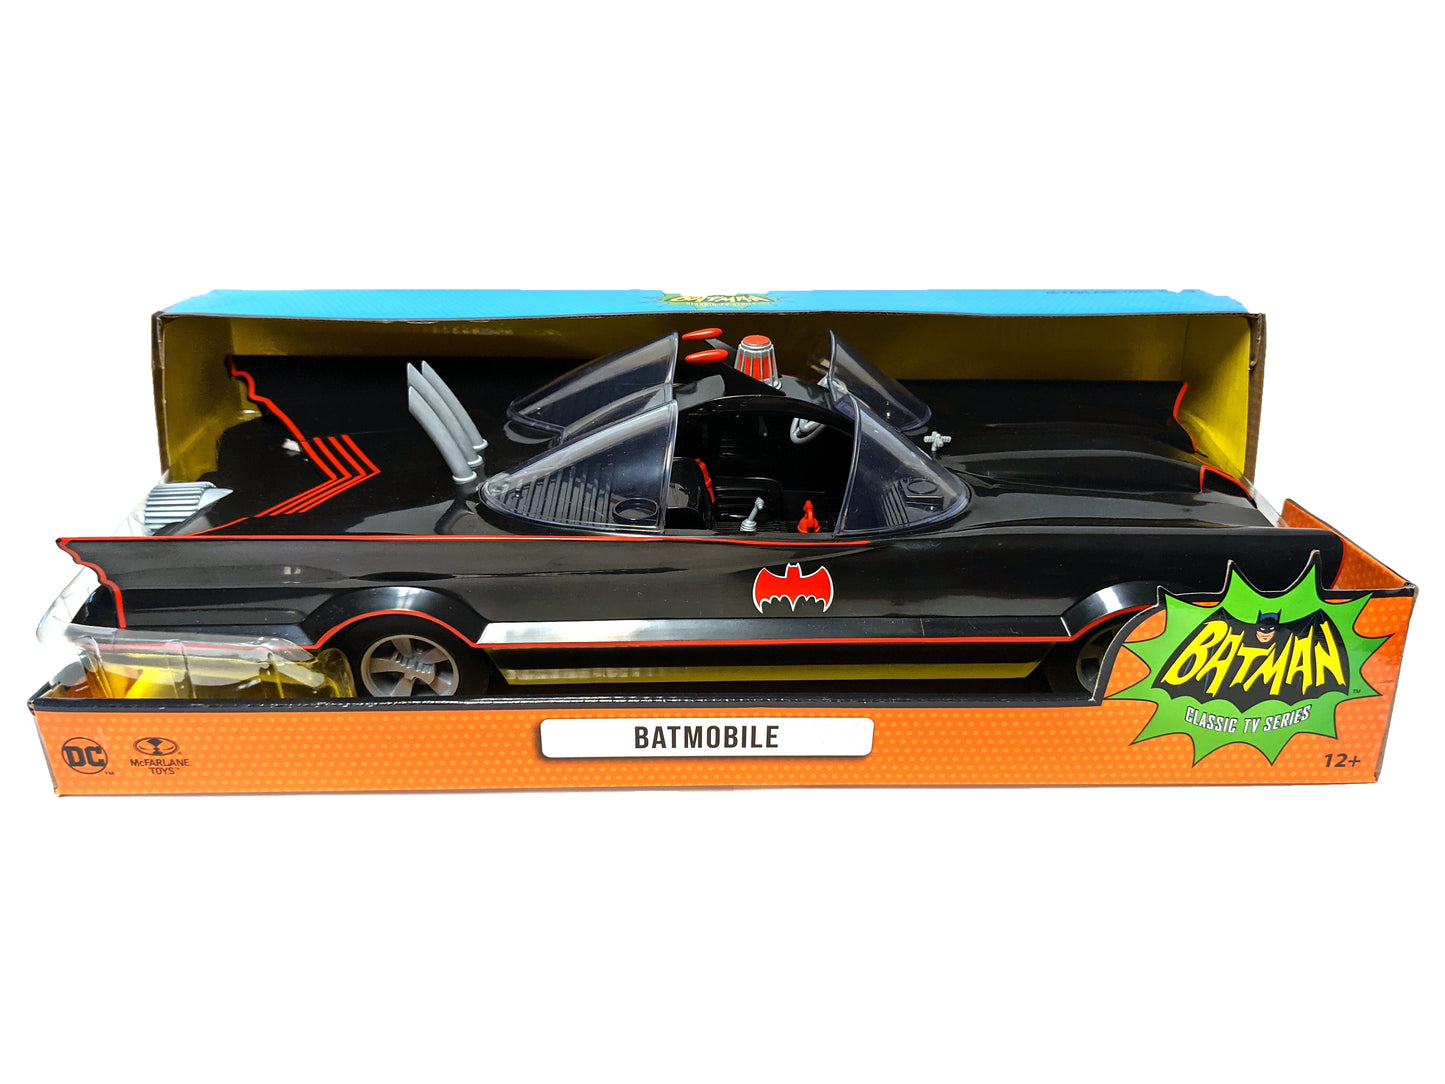 DC McFarlane - Retro Batman - Batmobile - Target Exclusive